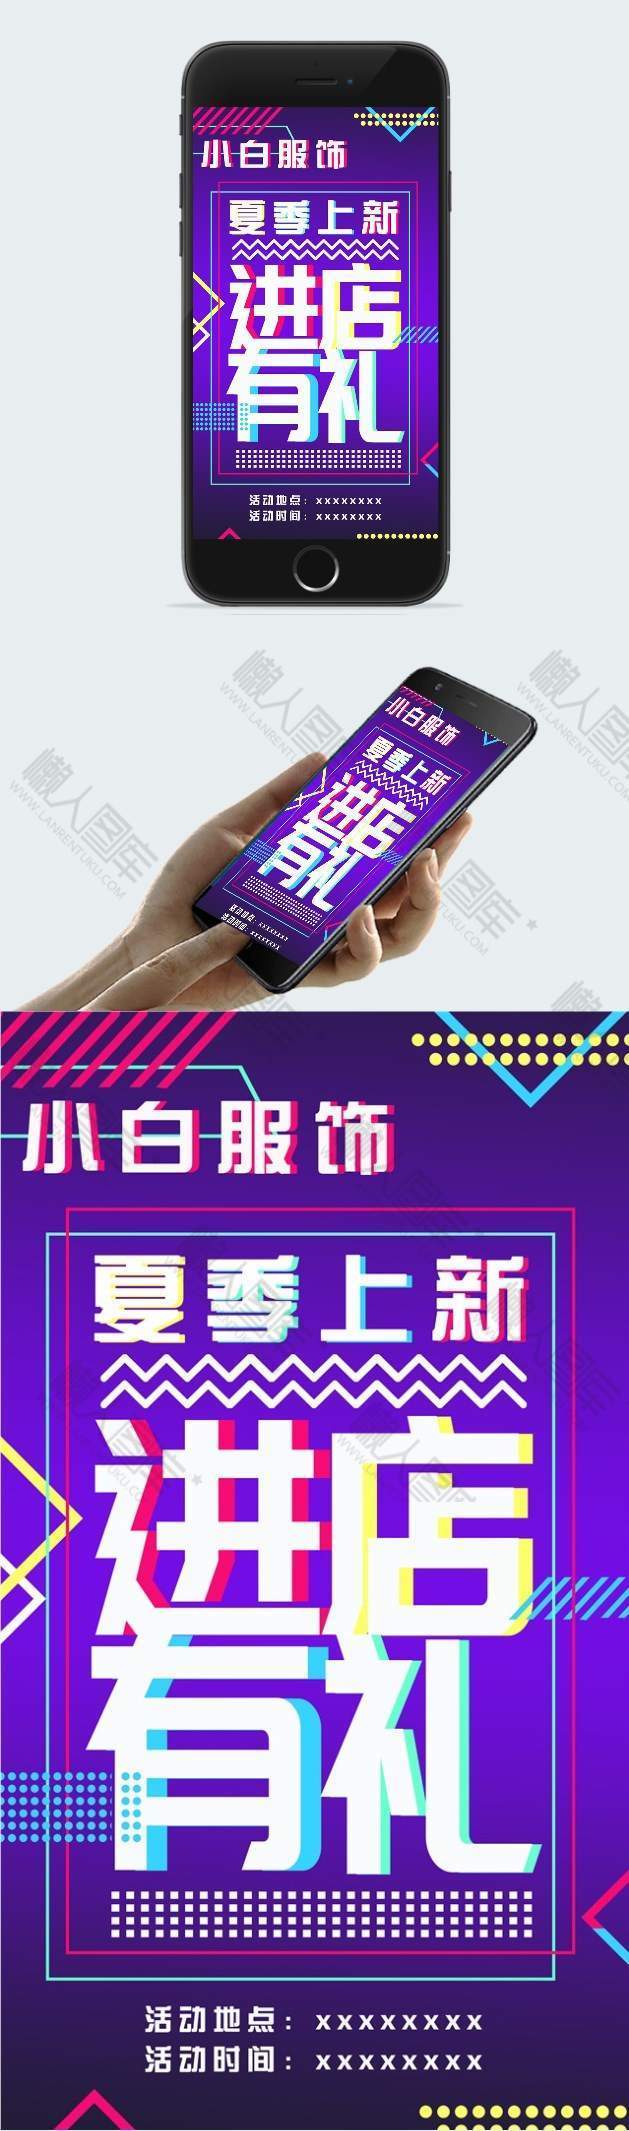 酷炫风服装店促销电商素材手机端海报